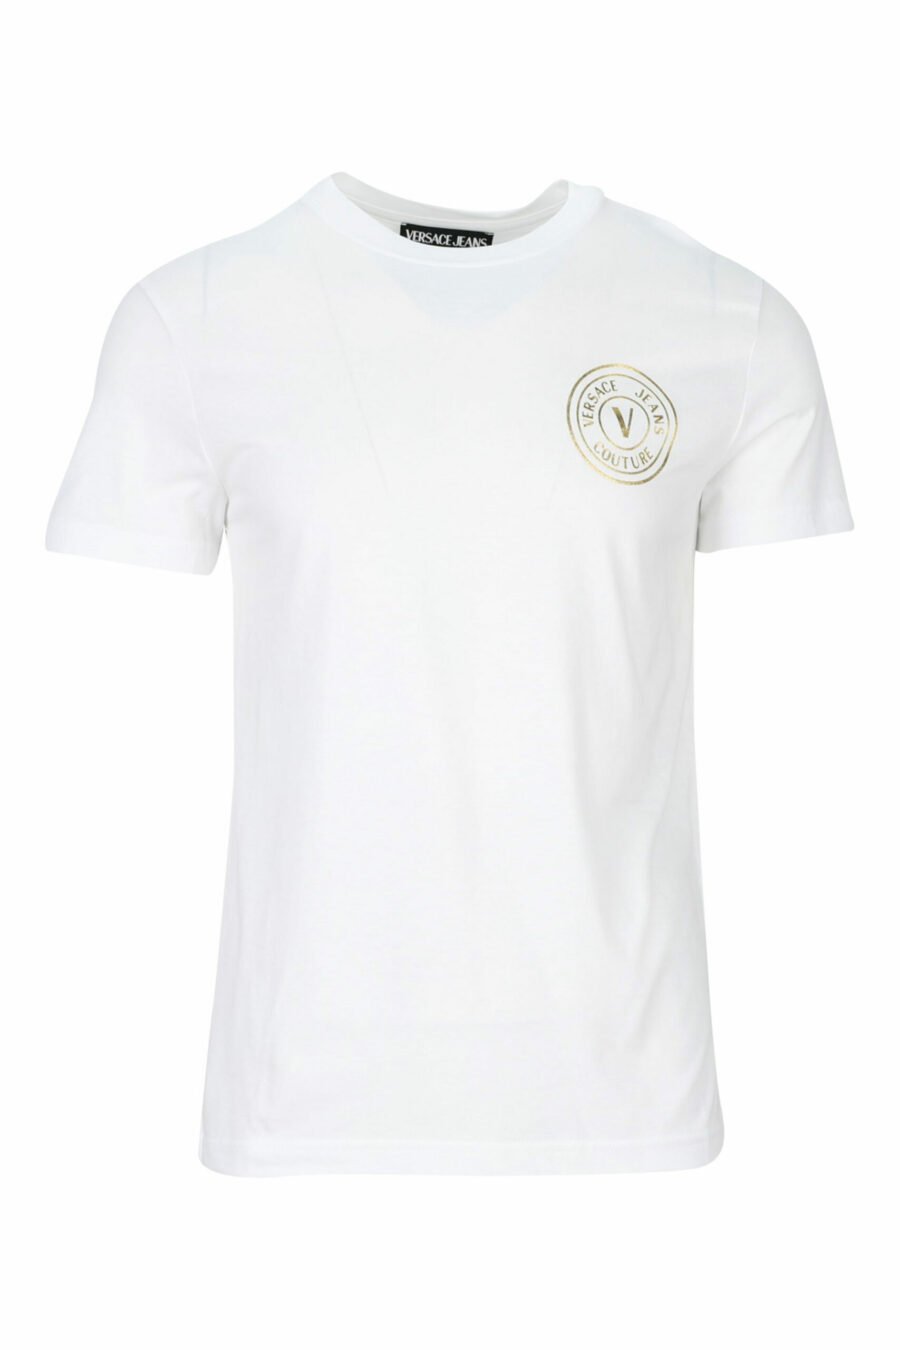 Camiseta blanca con minilogo circular dorado - 8052019468397 scaled